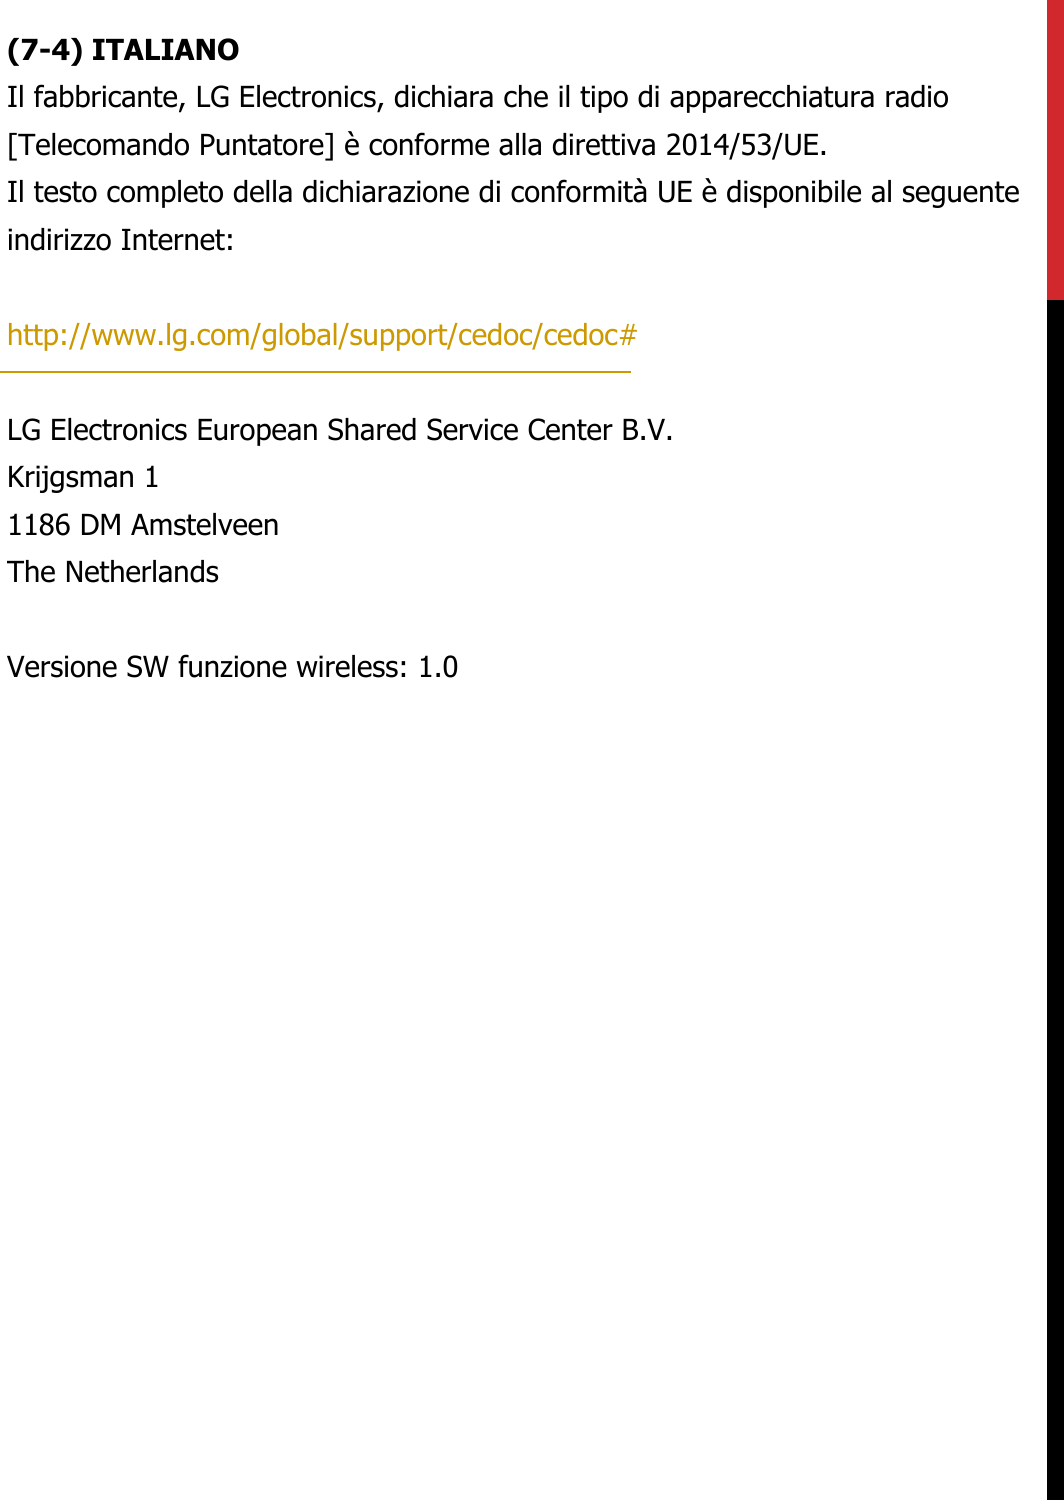 (7-4) ITALIANOIl fabbricante, LG Electronics, dichiara che il tipo di apparecchiatura radio[Telecomando Puntatore] è conforme alla direttiva 2014/53/UE.  Il testo completo della dichiarazione di conformità UE è disponibile al seguente indirizzo Internet:   http://www.lg.com/global/support/cedoc/cedoc#   LG Electronics European Shared Service Center B.V.  Krijgsman 1  1186 DM Amstelveen  The Netherlands   Versione SW funzione wireless: 1.0